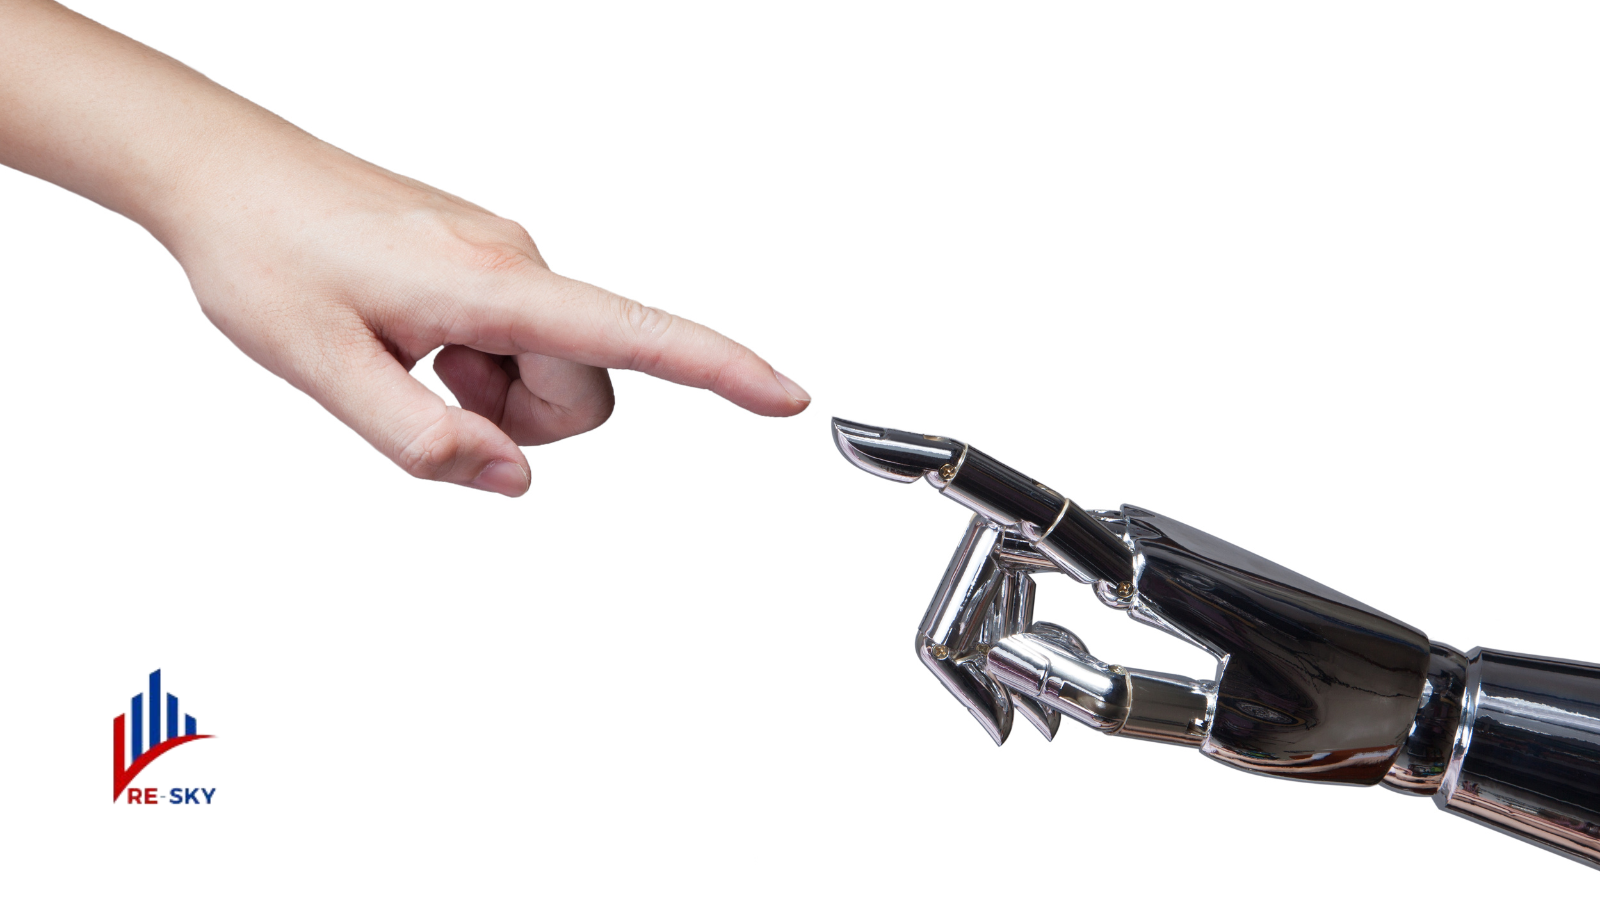 La inteligencia artificial sintética: ¿una amenaza o una oportunidad?